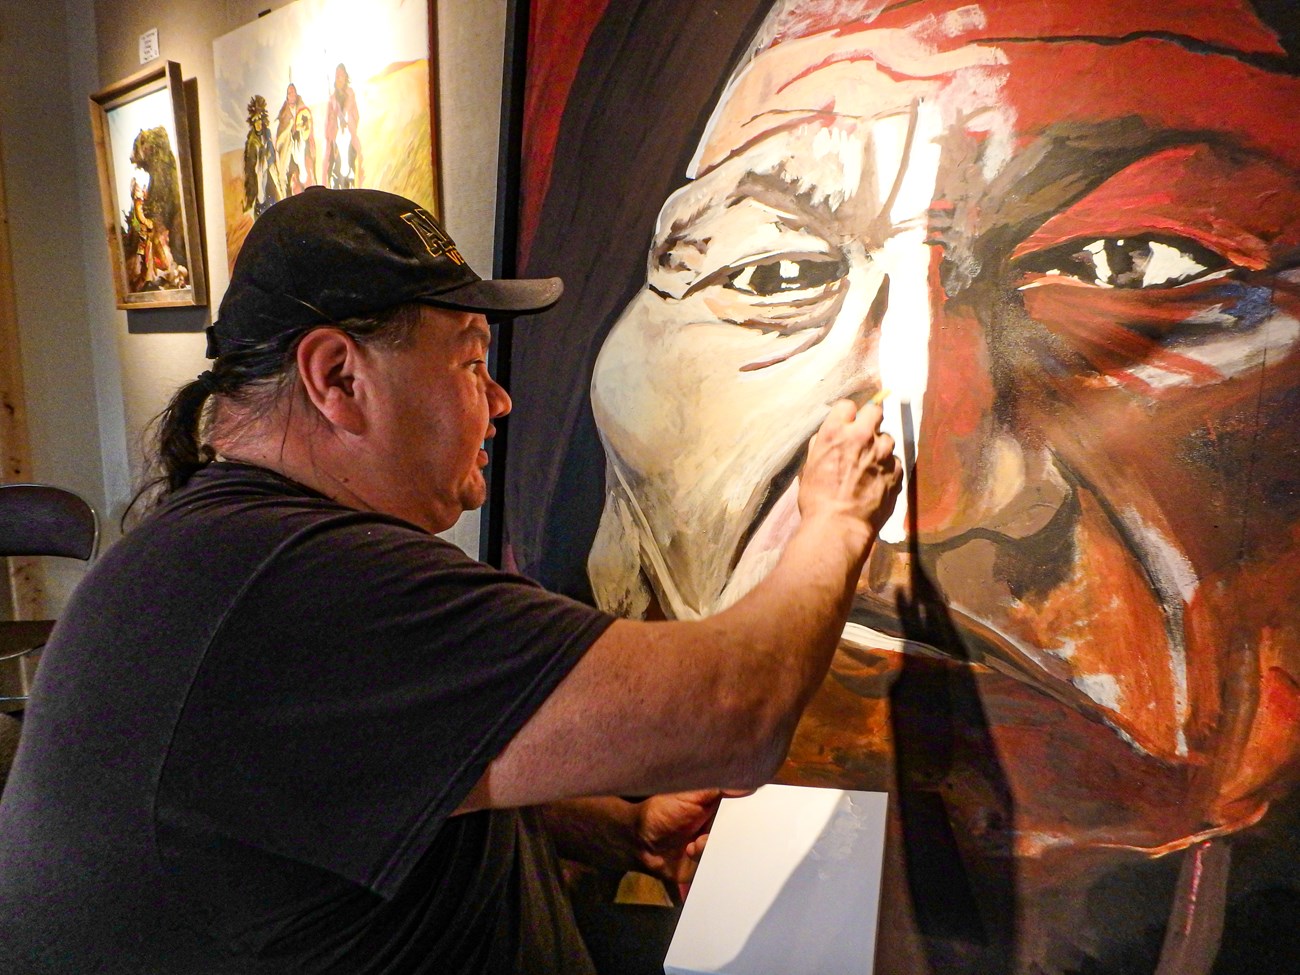 a Native artist paints a large face